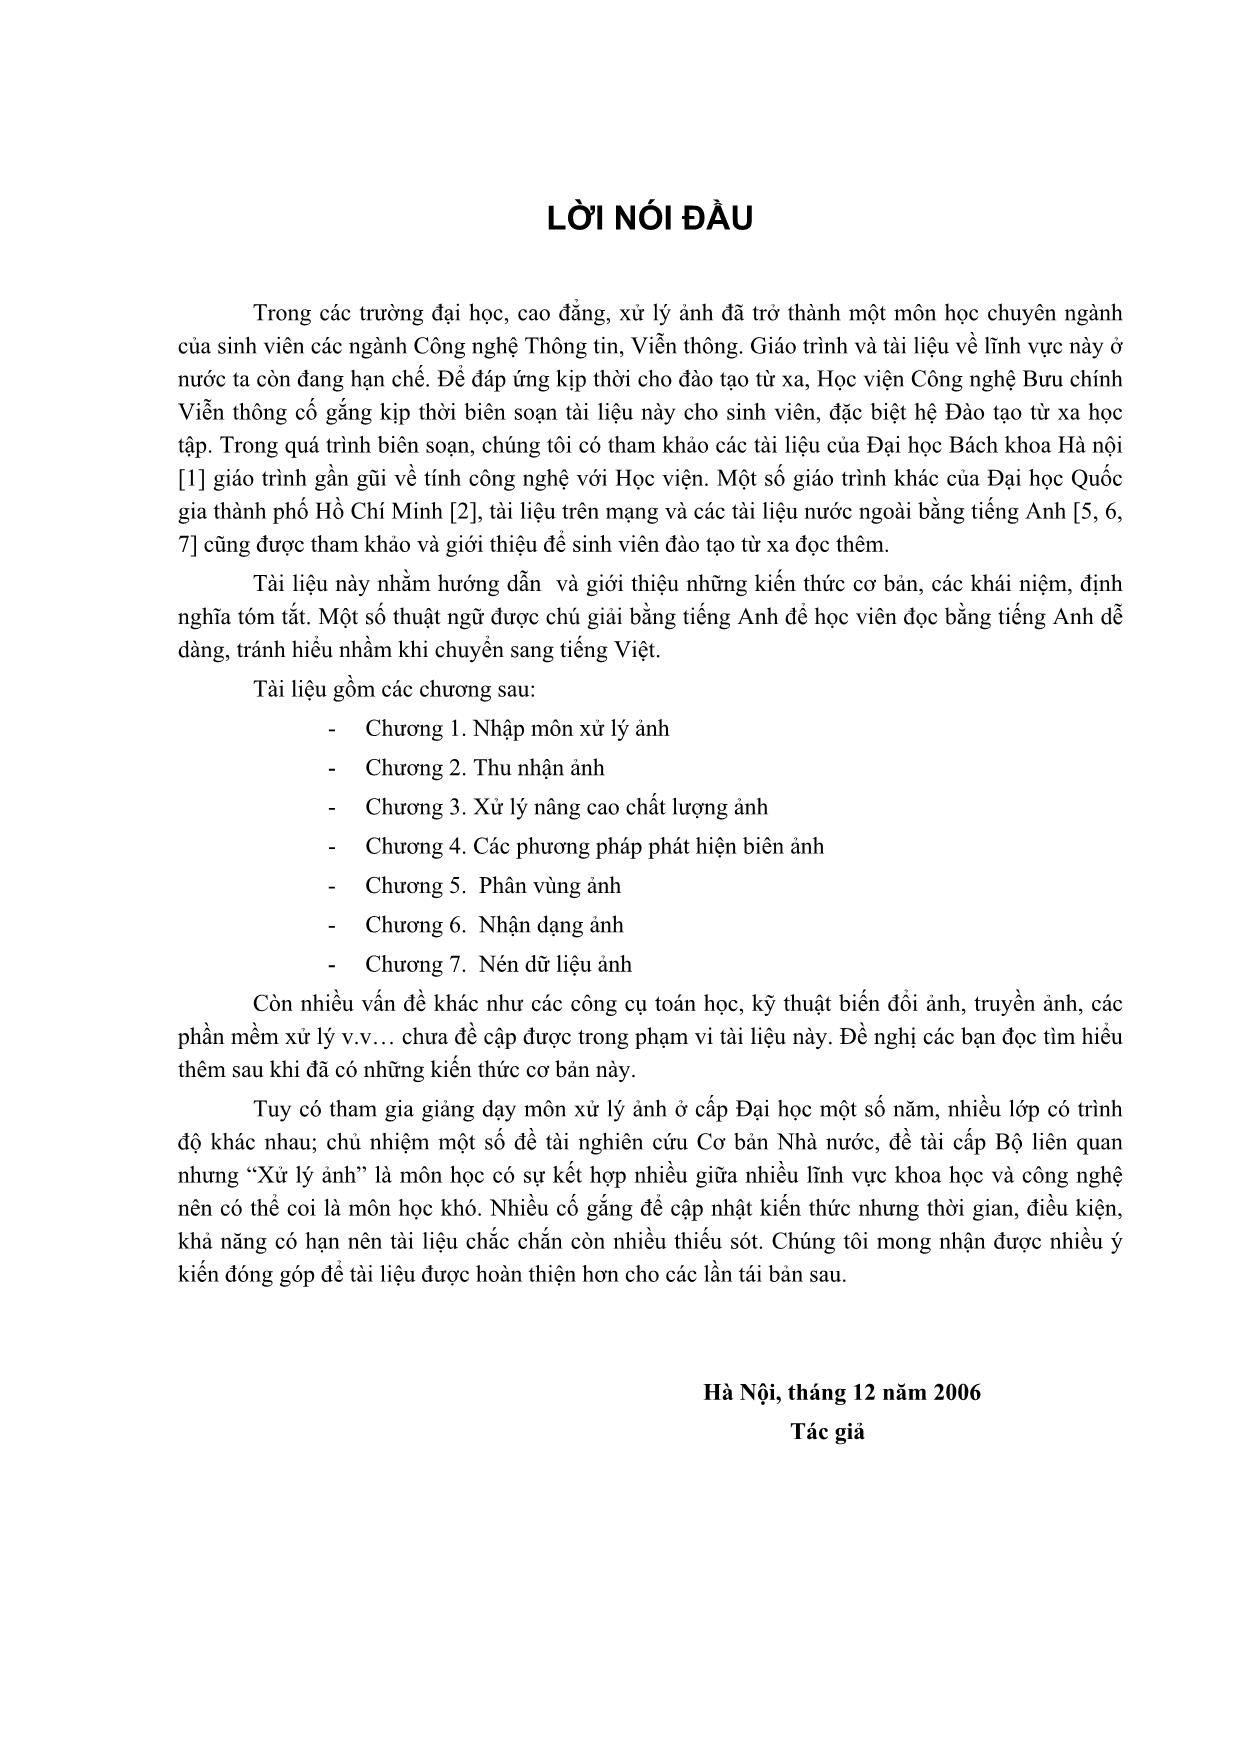 Giáo trình Xử lý ảnh - Nguyễn Quang Hoan trang 3